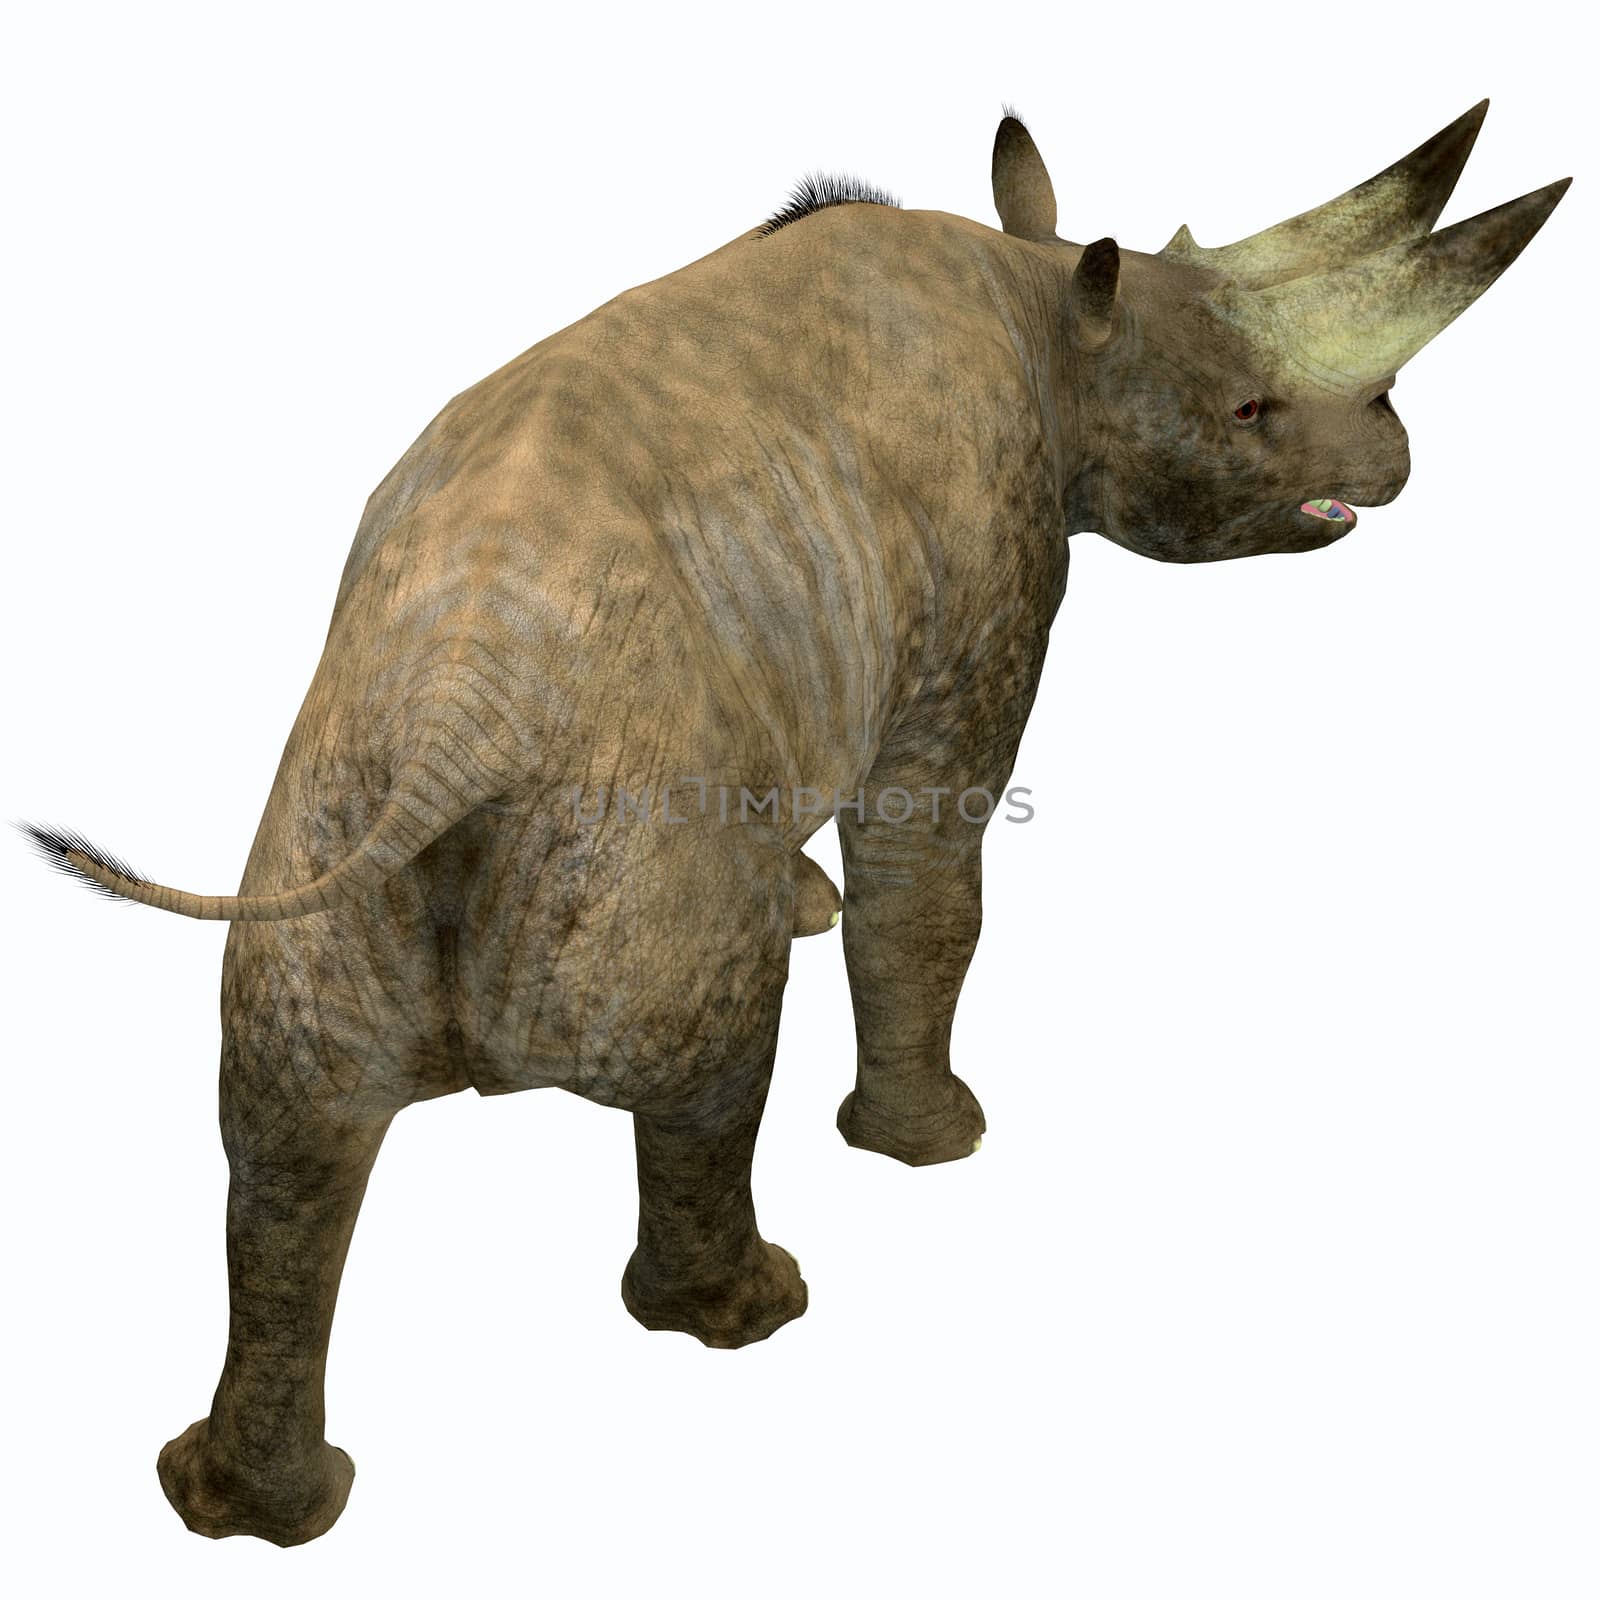 Arsinoitherium Mammal Tail by Catmando